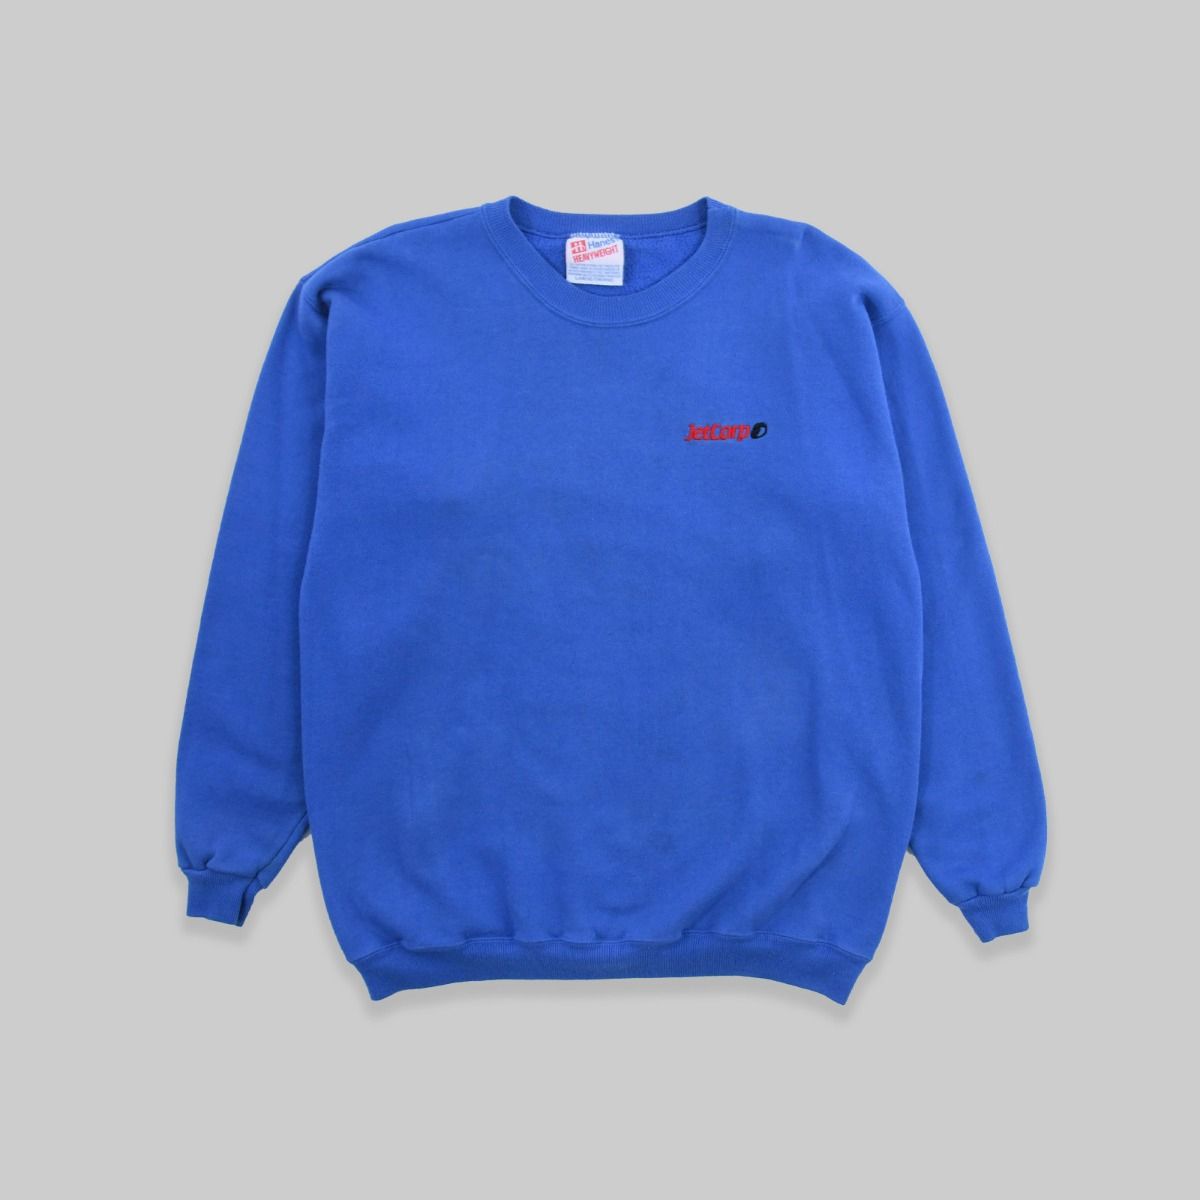 Jetcorp 1990s Sweatshirt